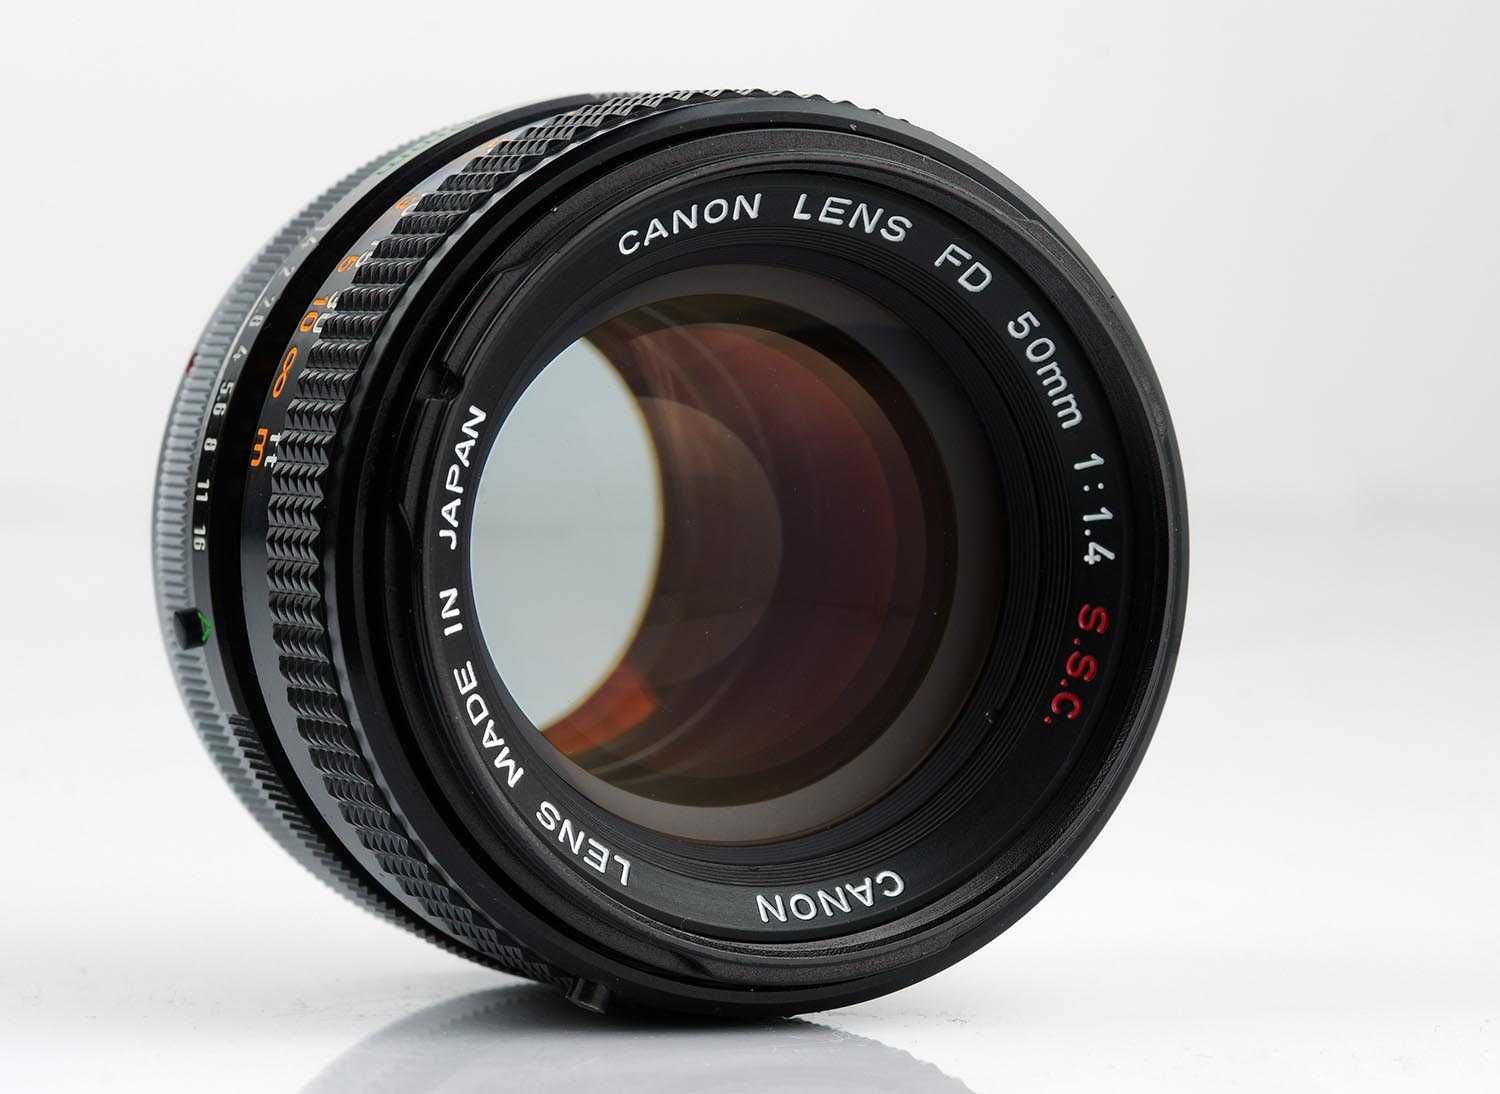 Canon 50/1,4 FD S.S.C. - світлосильна мануальна п’ятидесятка